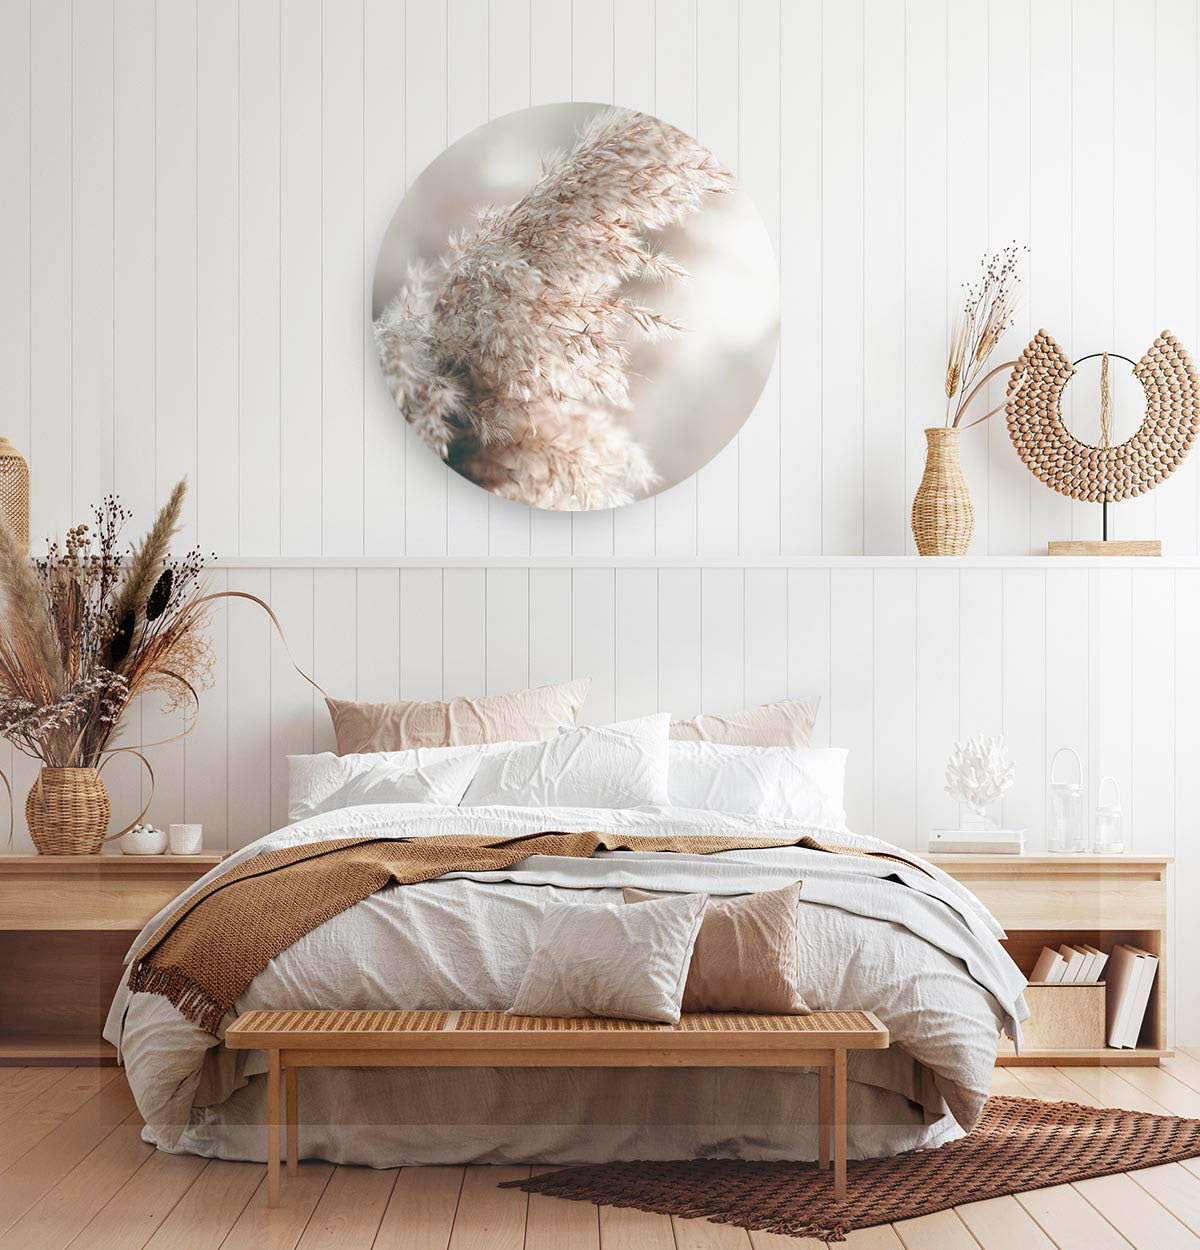 Slaapkamer met een ronde wandcirkel met pampasgrass erop afgebeeld.